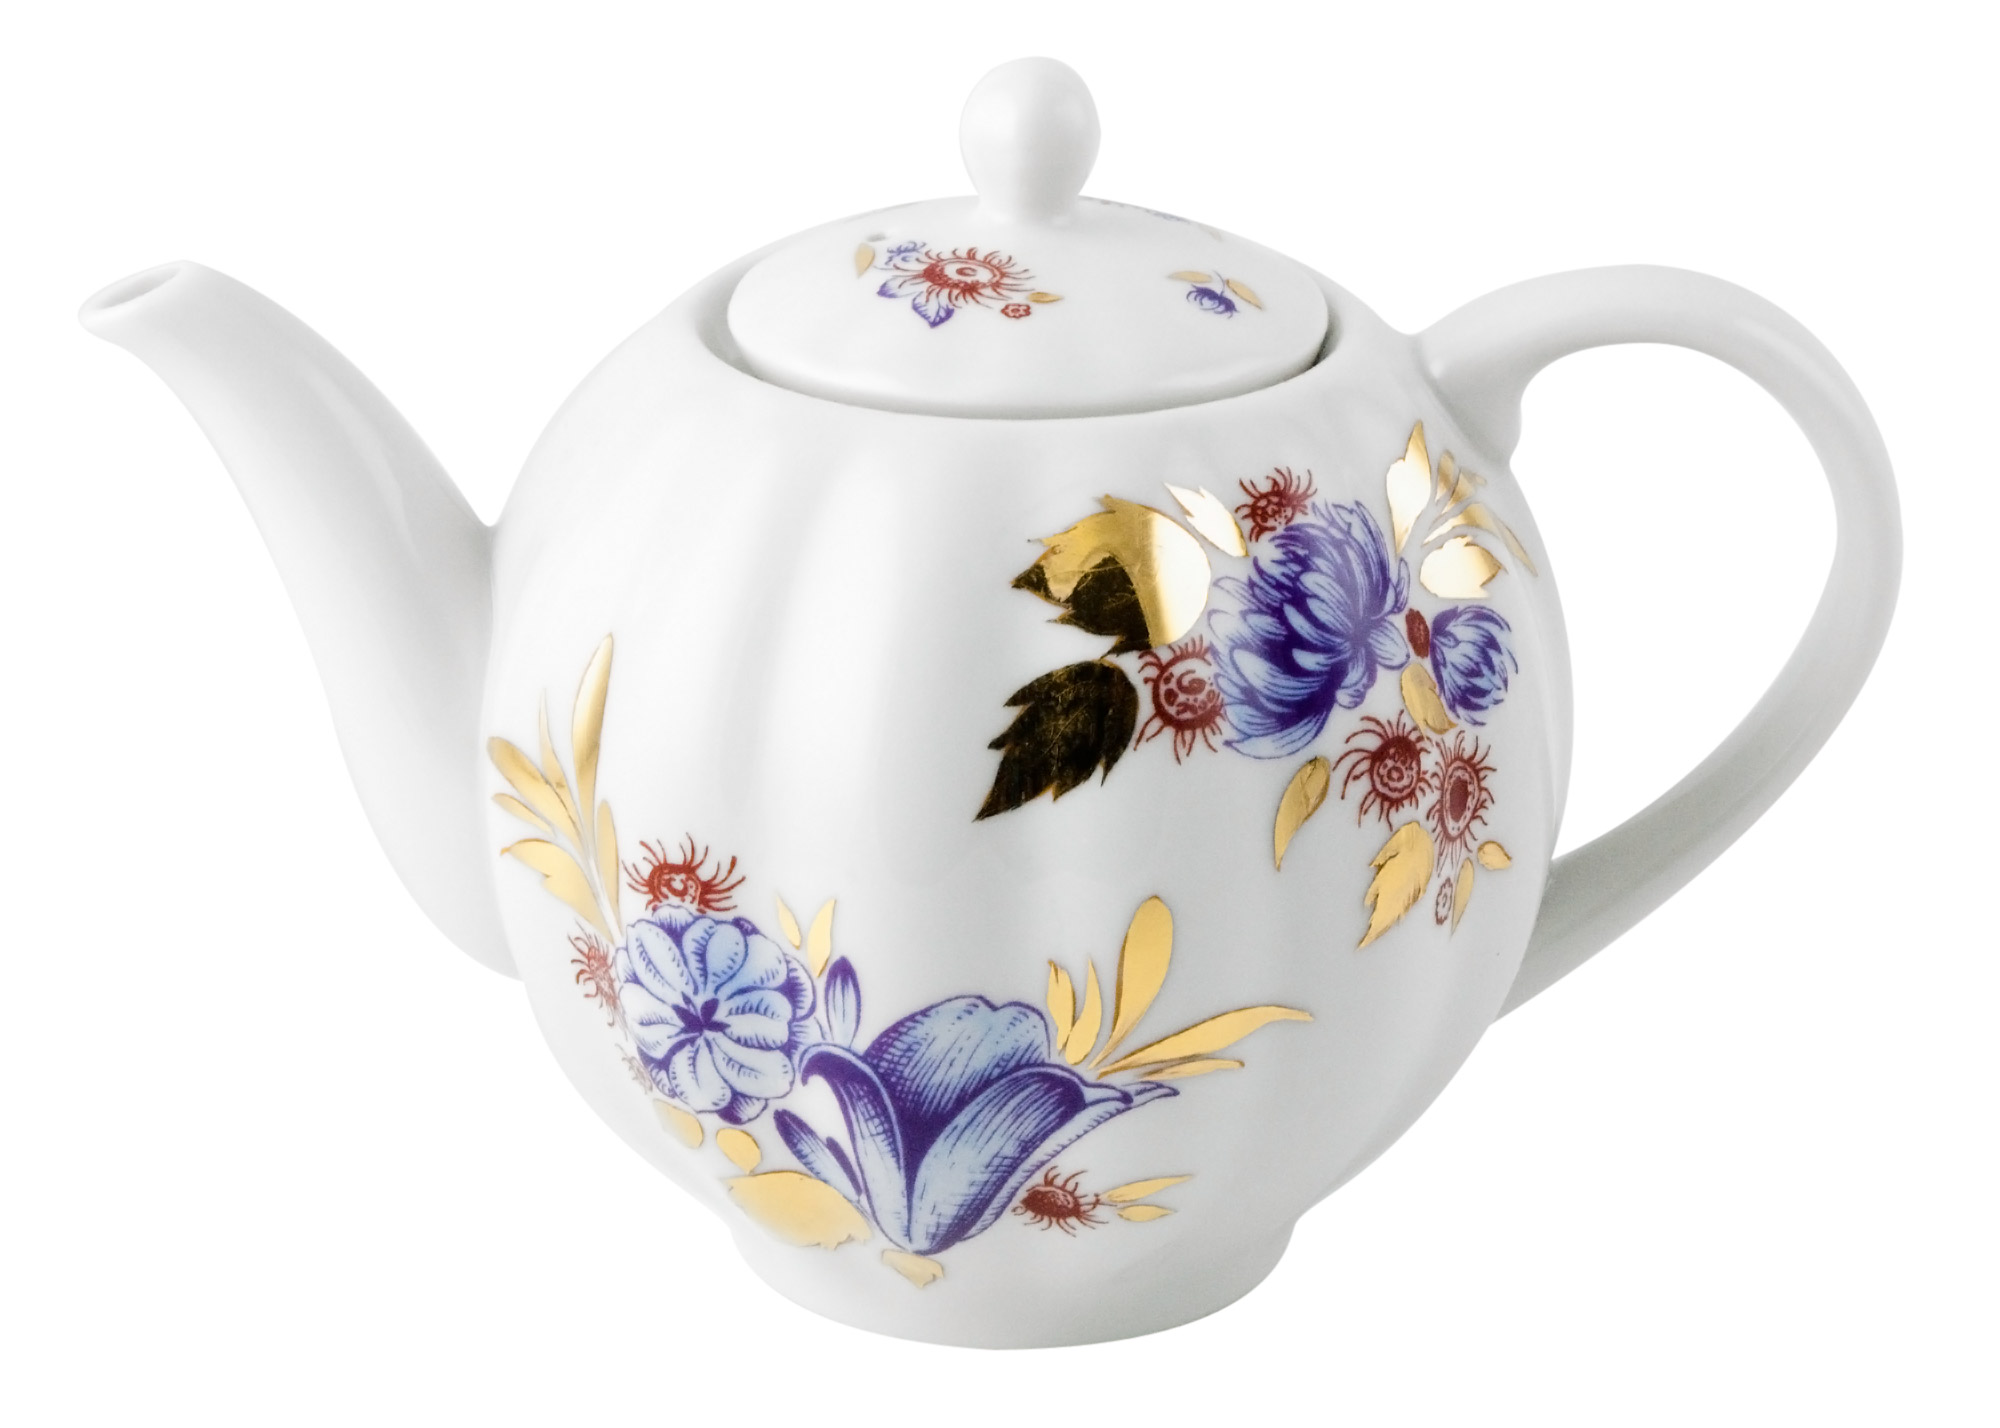 Buy Golden Leaves Teapot at GoldenCockerel.com